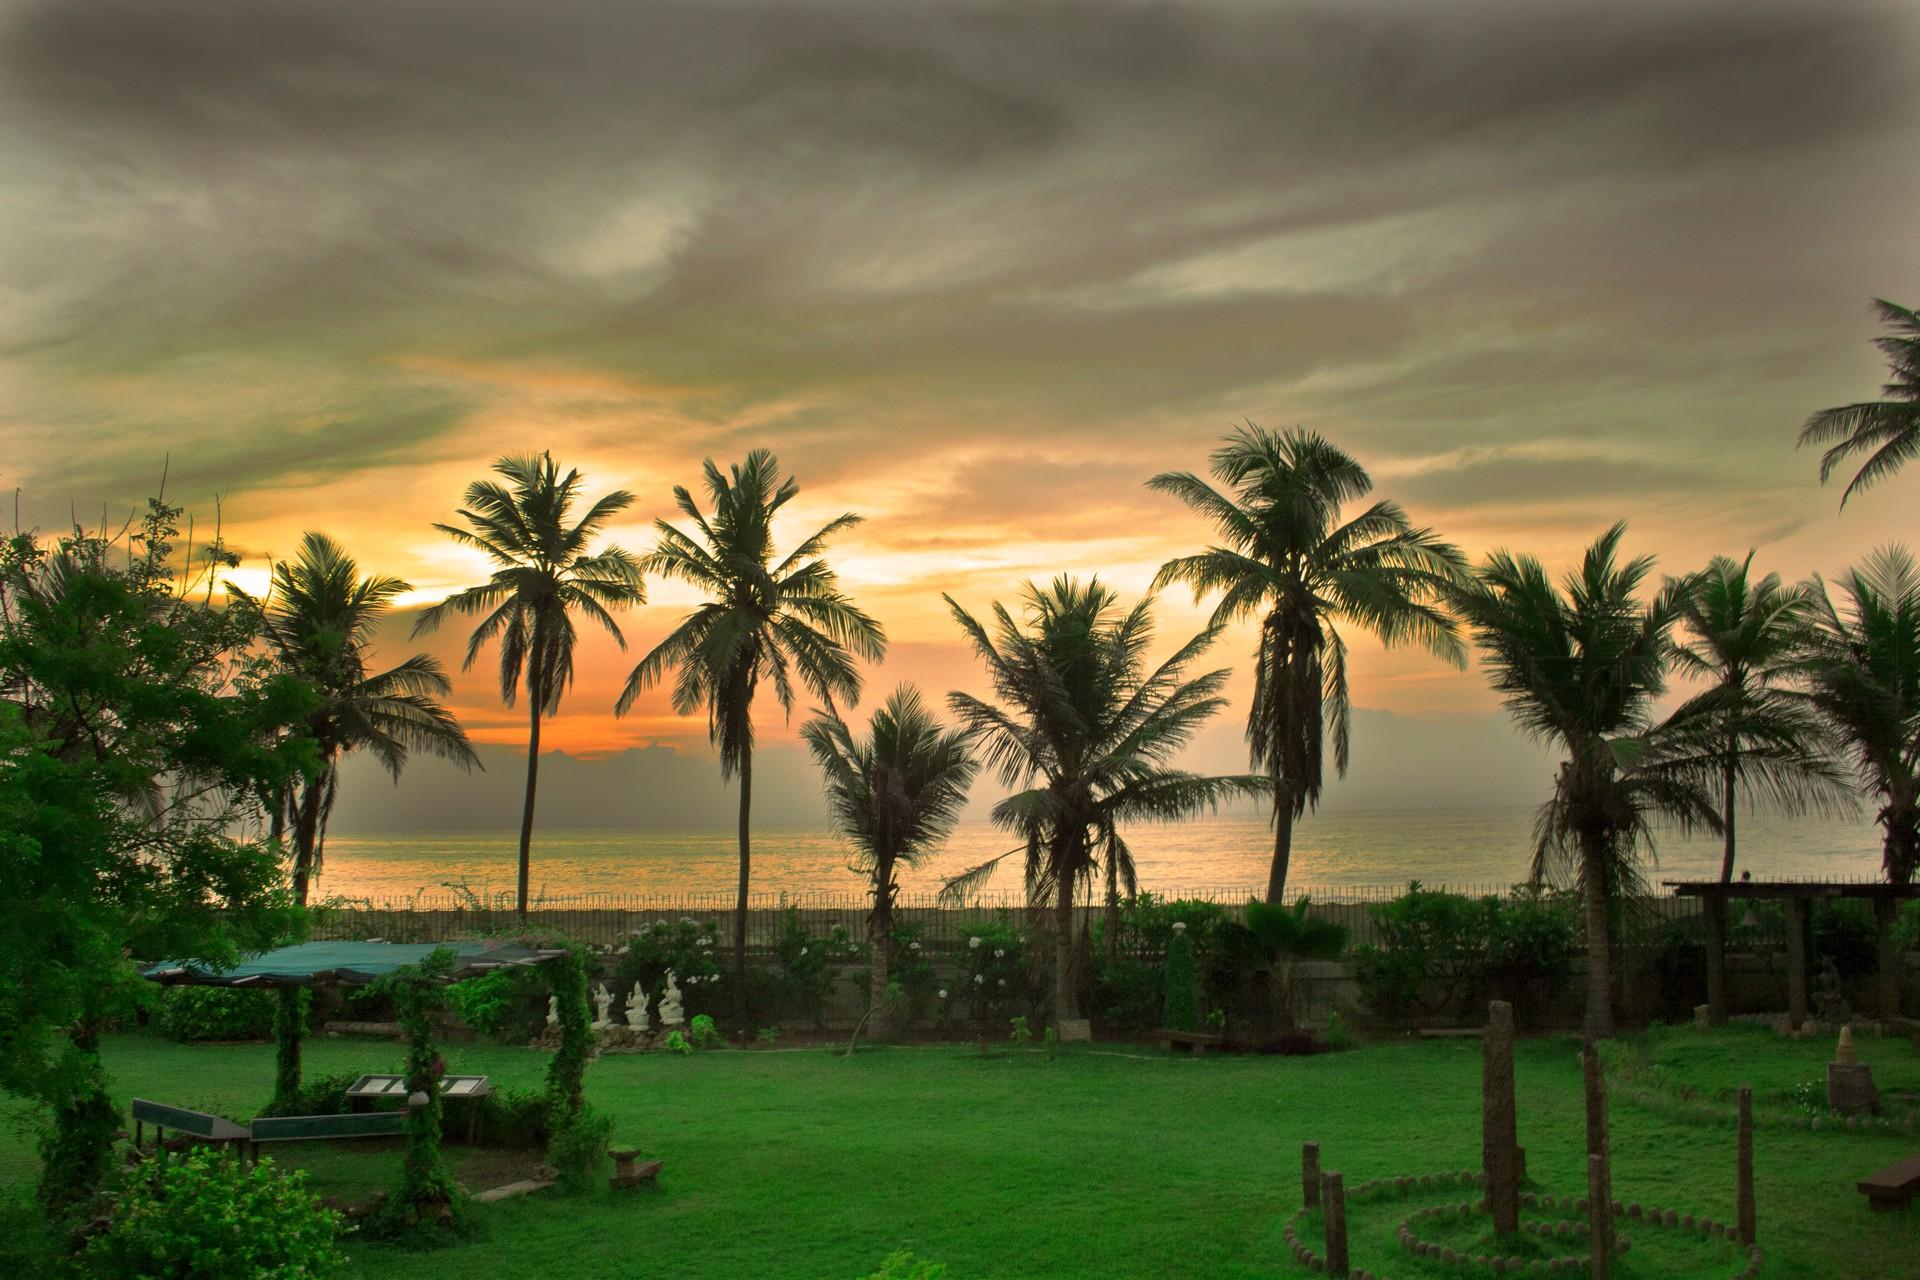 Location near Pondicherry at dawn